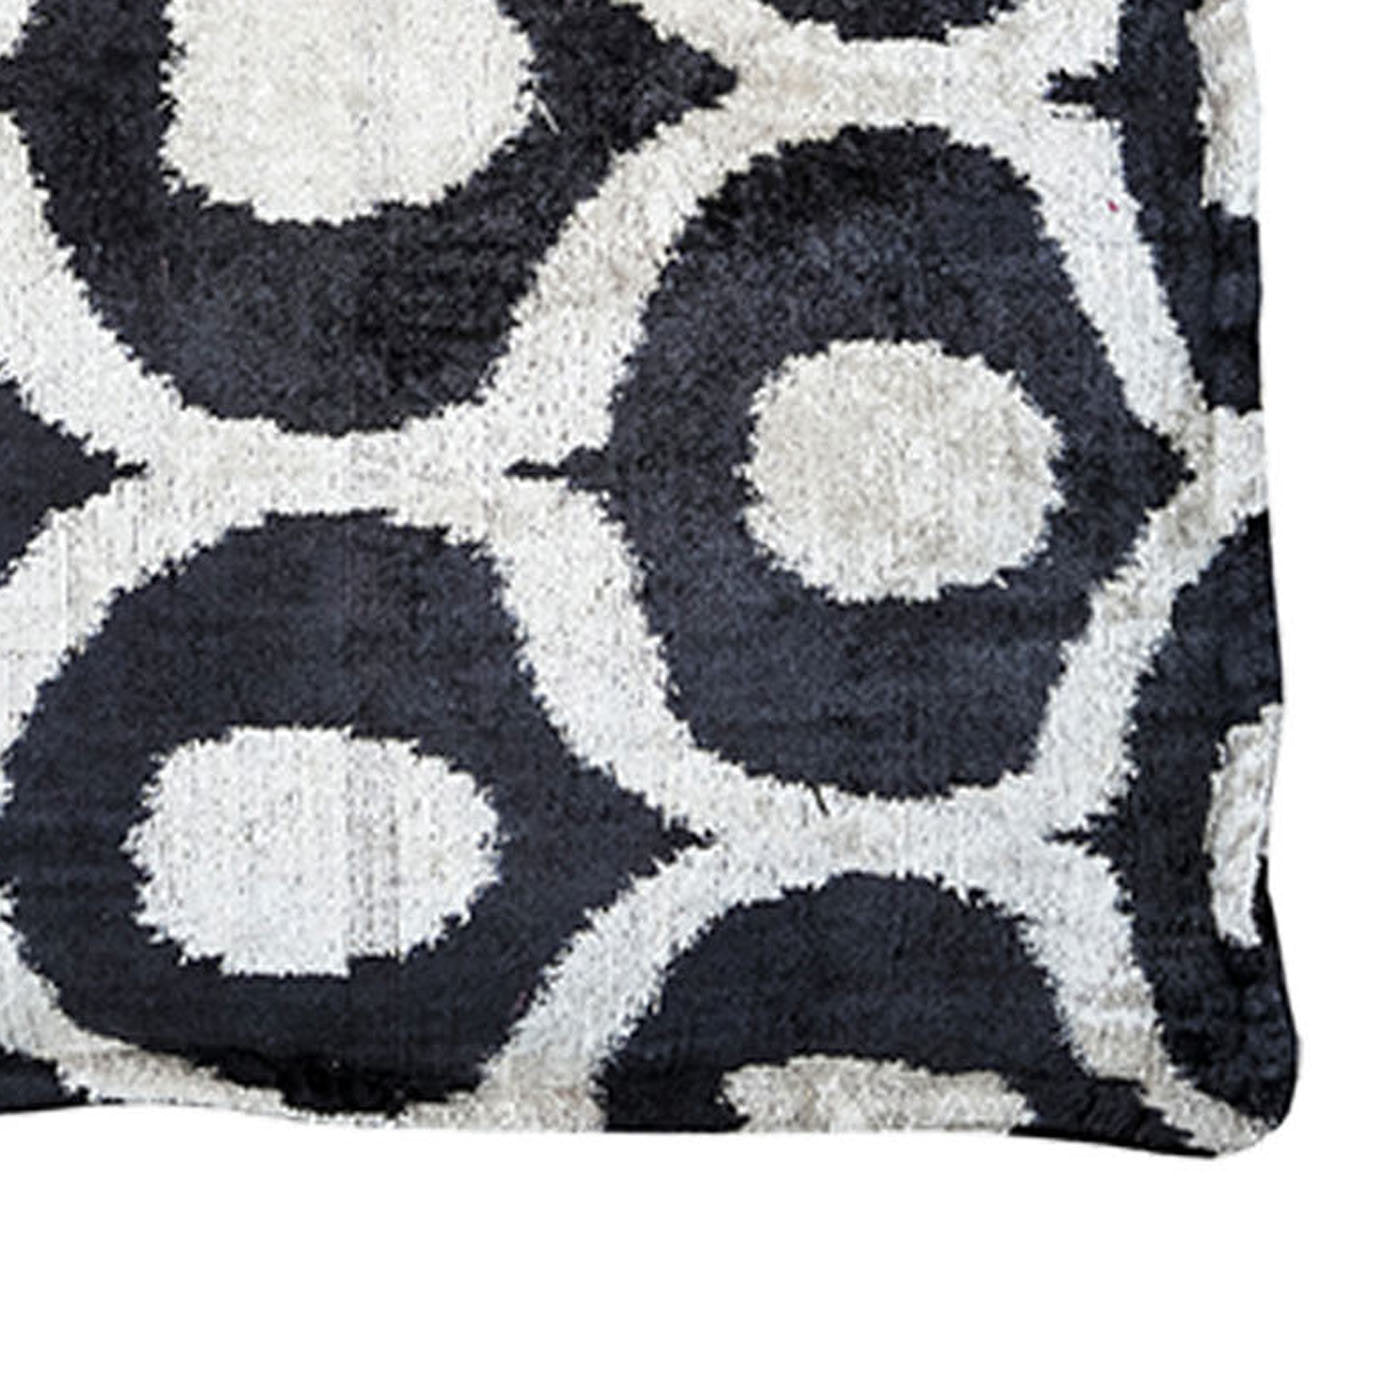 Silk Velvet Floor Cushion in Black and White - Alternative view 1